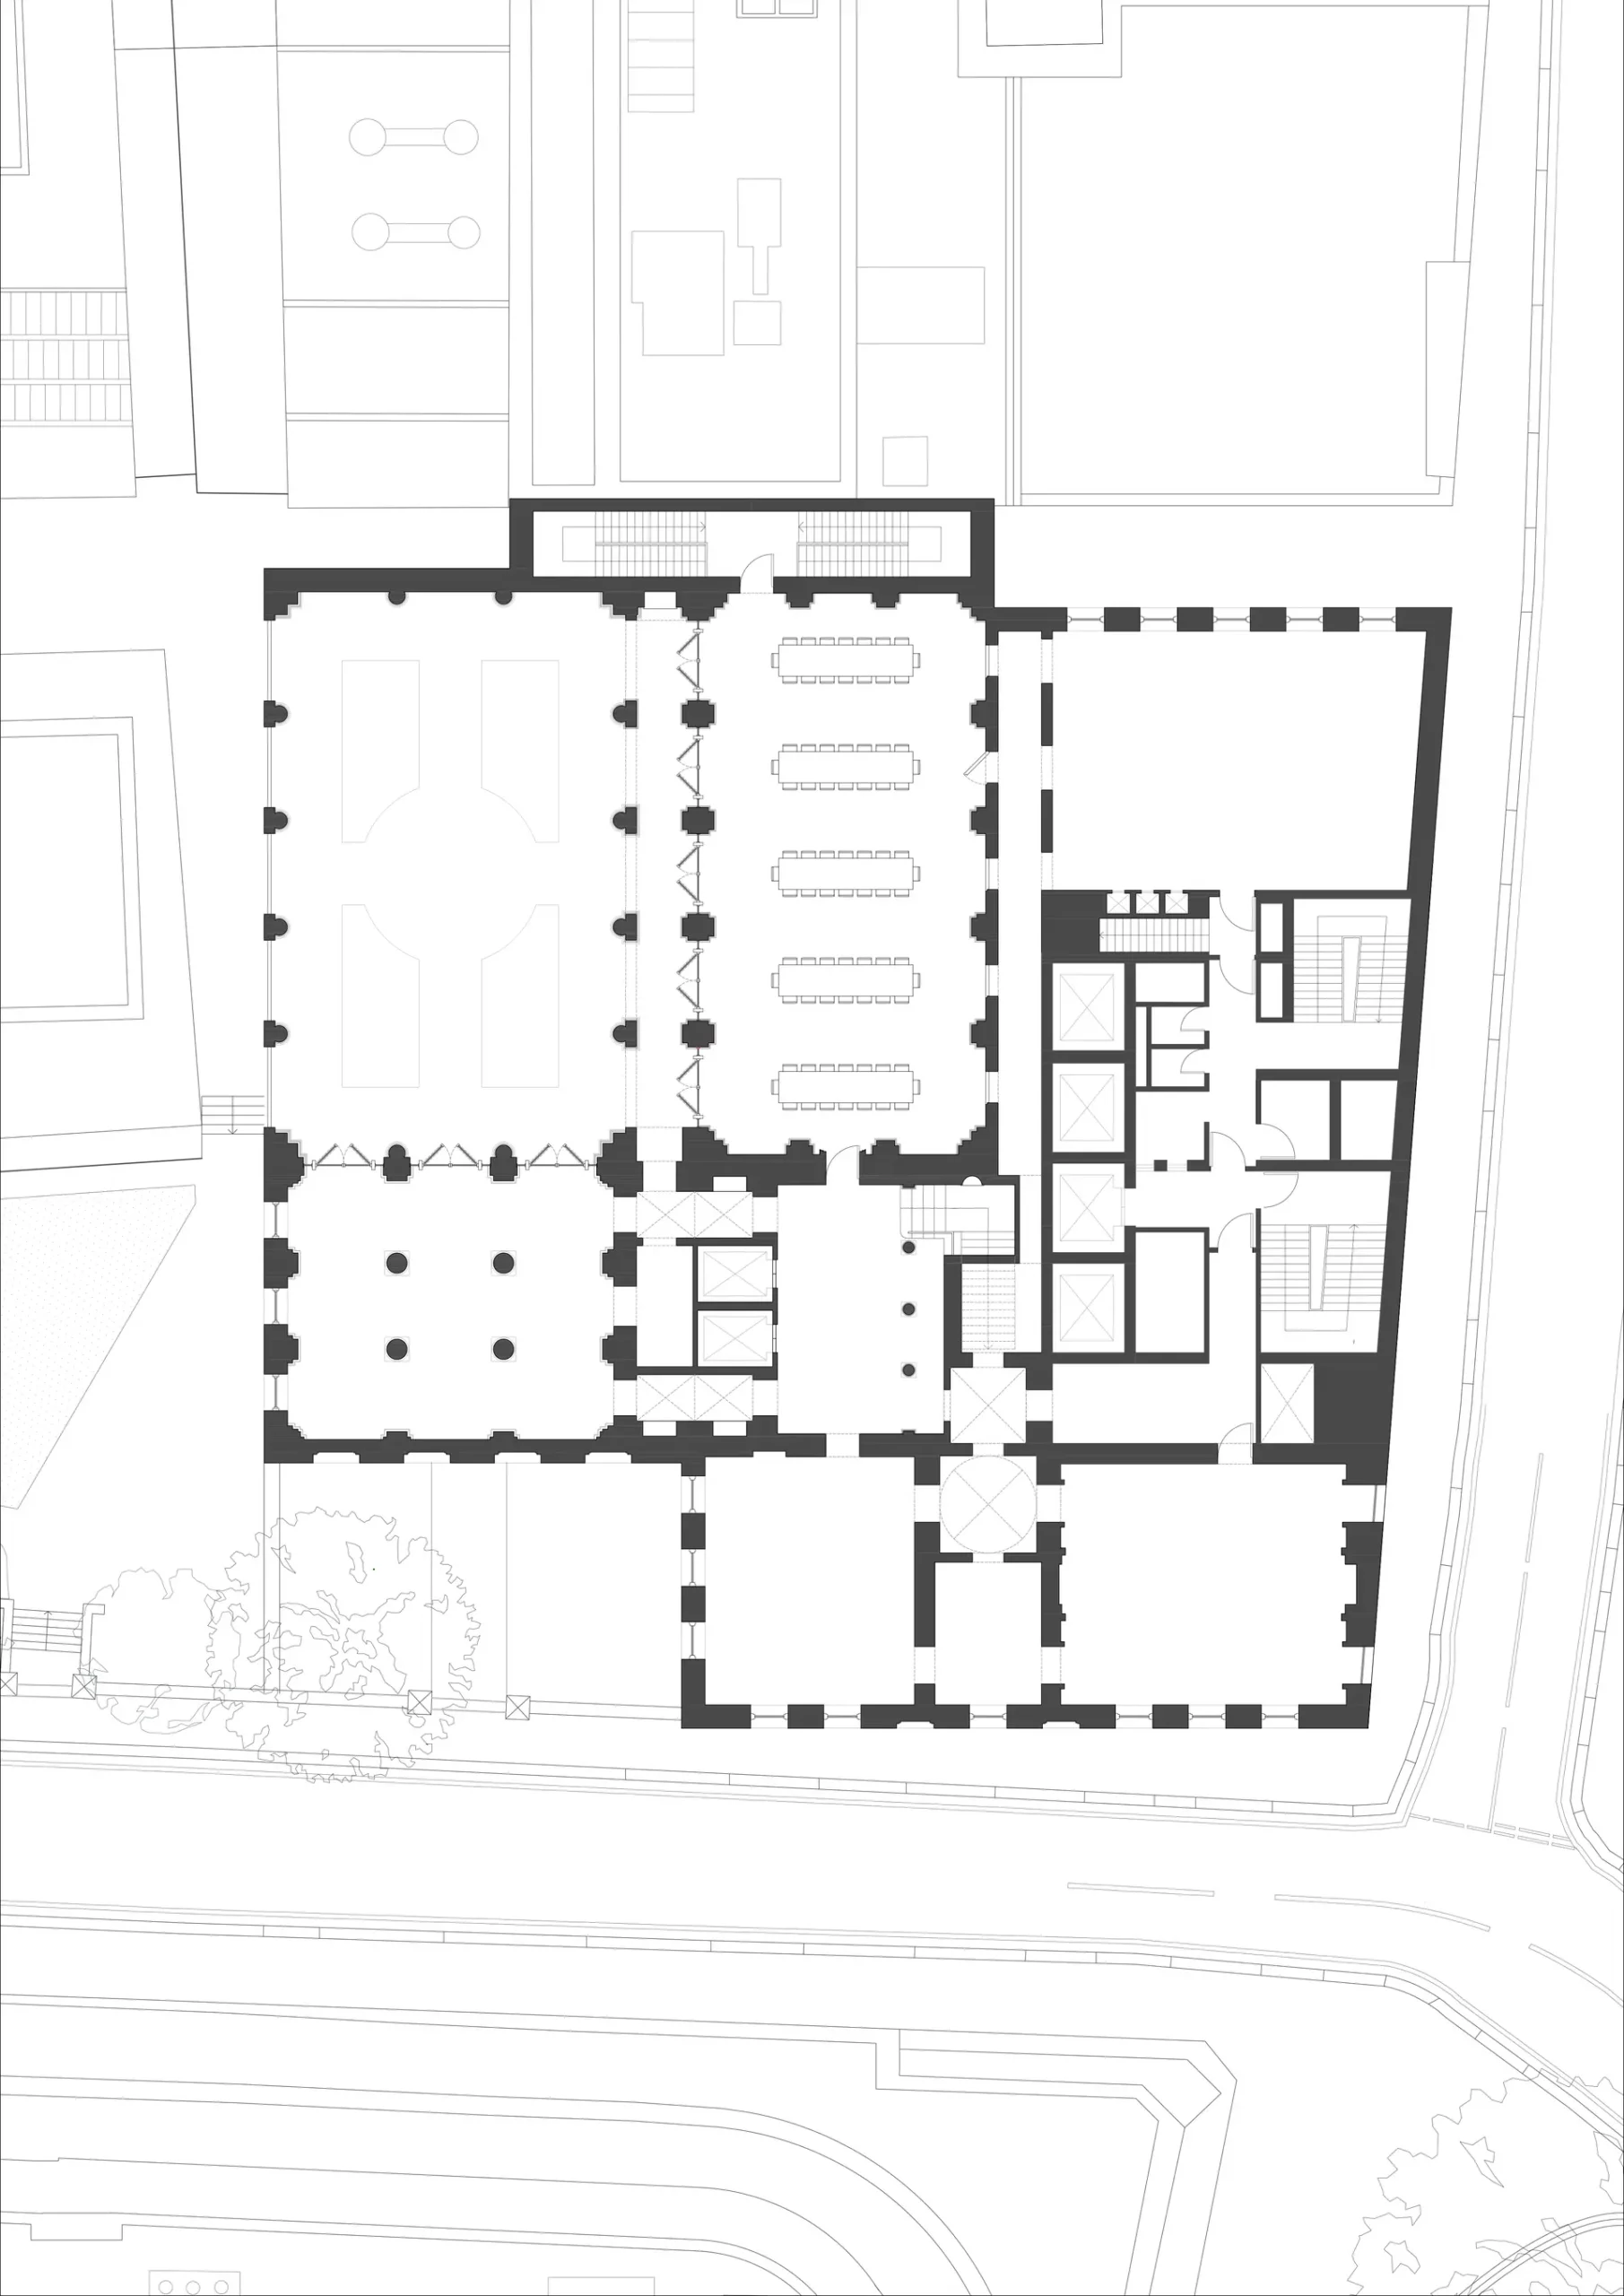 ivery Hall floor plan, Lauren Drummond, 2022